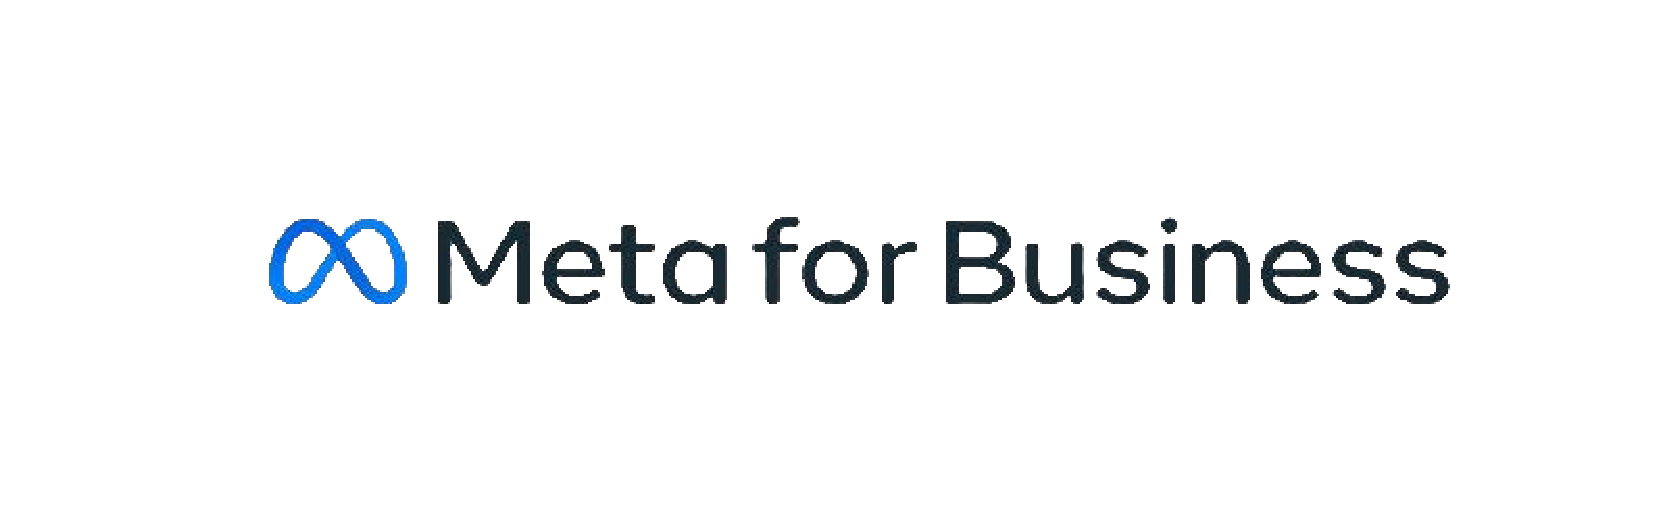 Meta For Business Logo